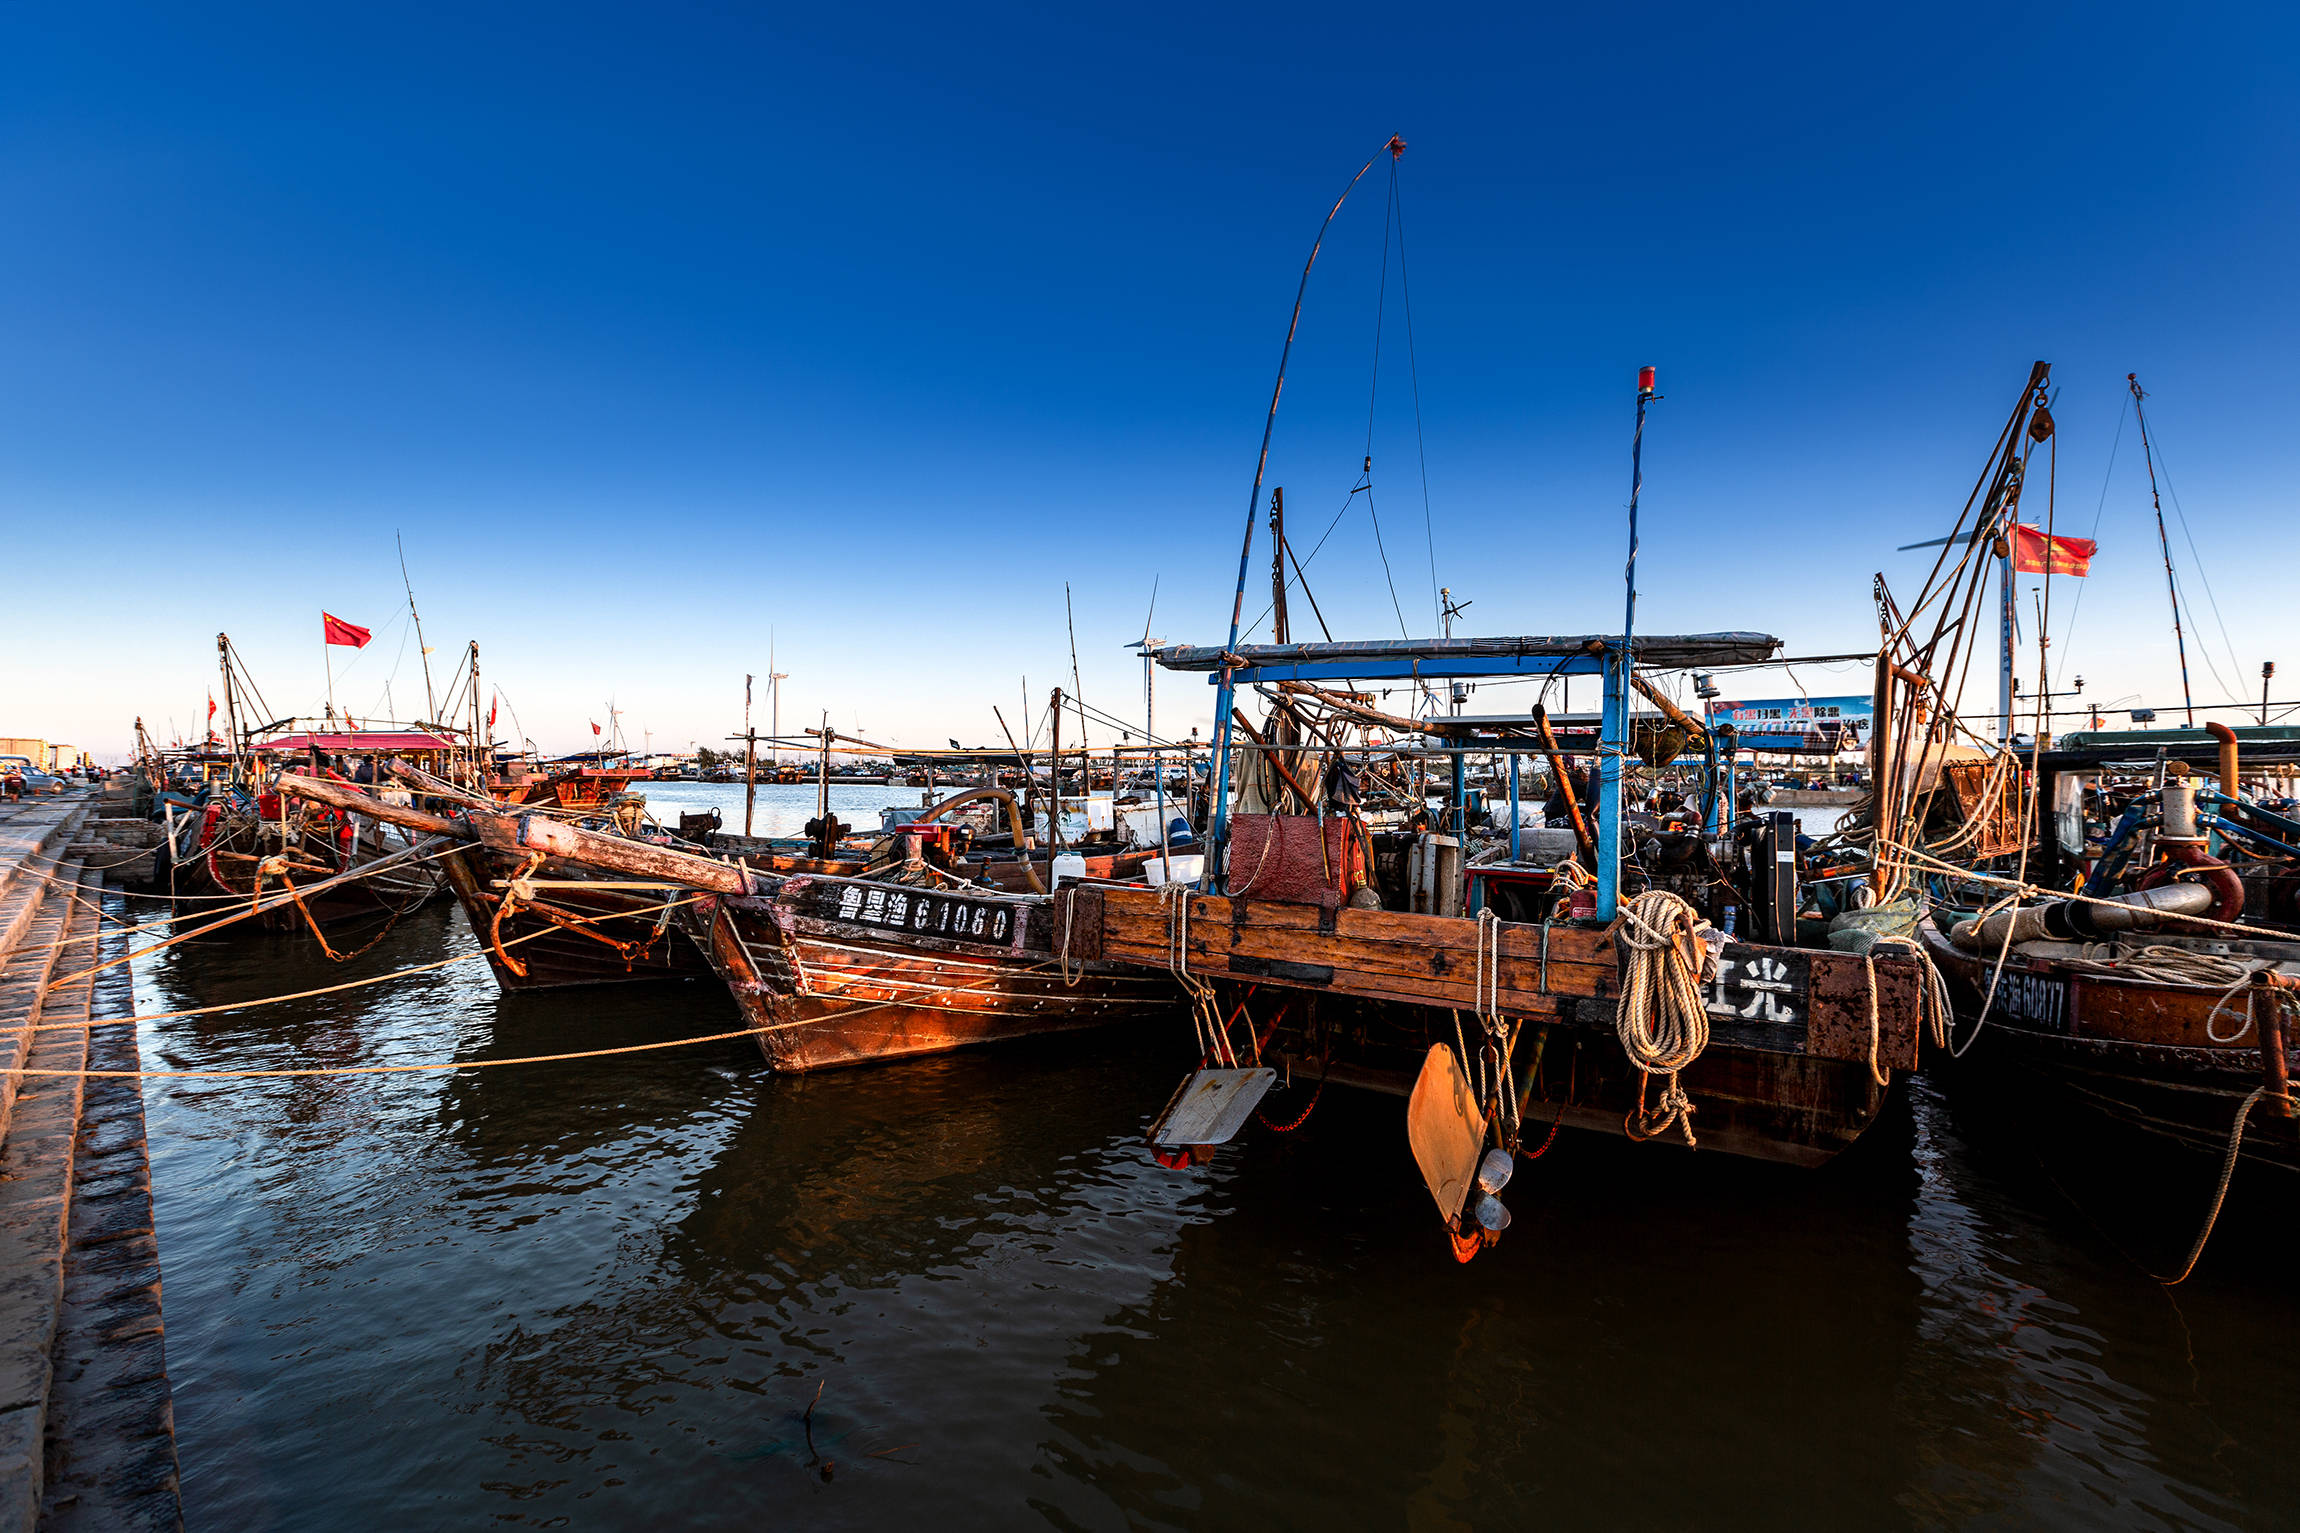 山东东营市垦利区红光渔港是垦利区的重要渔业港口之一,位于中心城